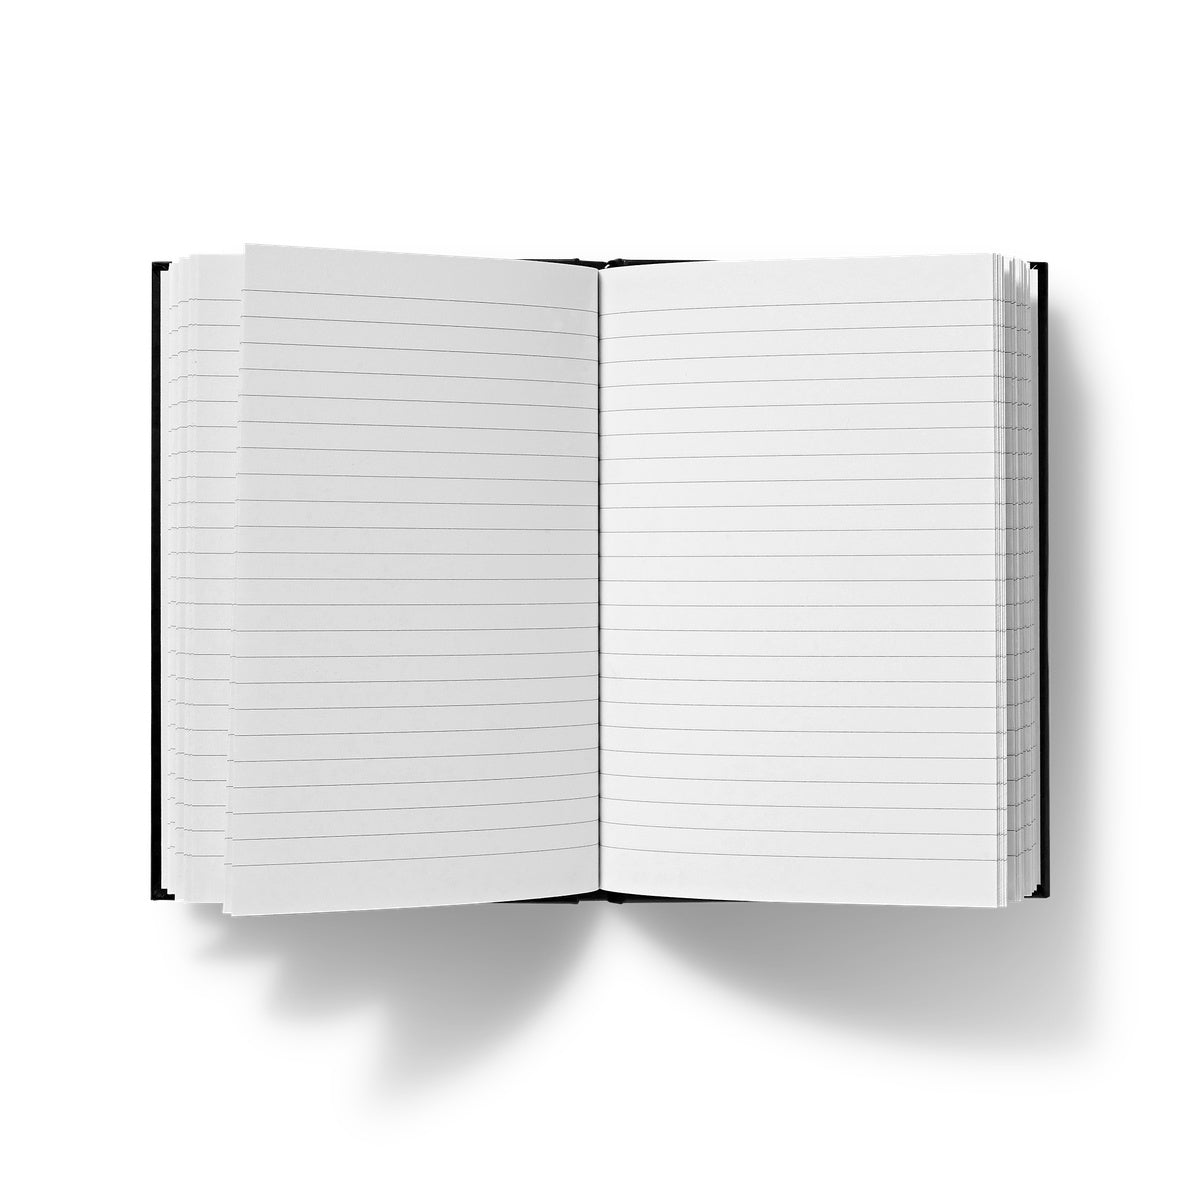 Longboard Livin Hardback Journal